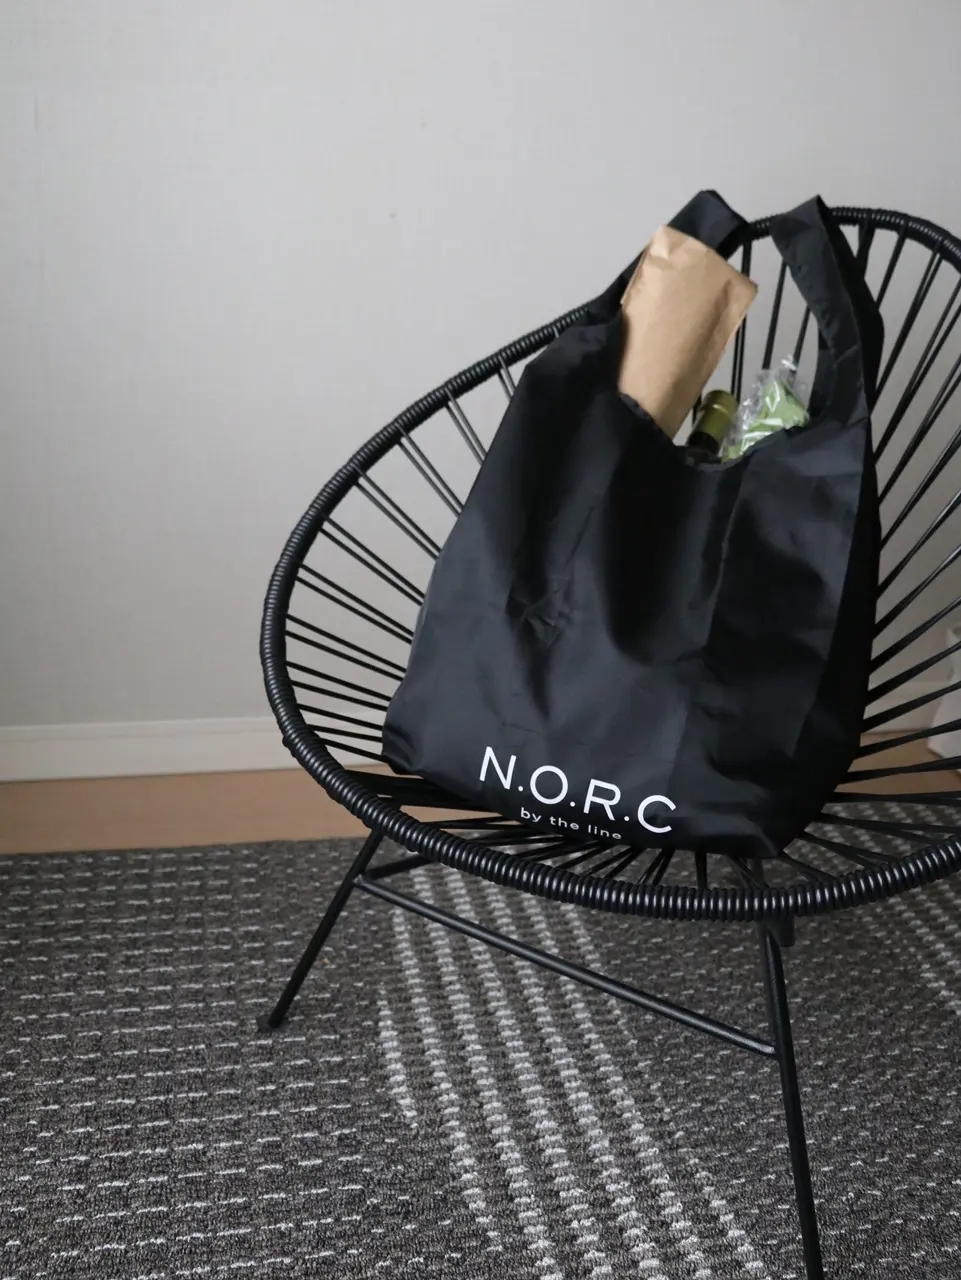 N.O.R.Cのショッパーバッグでお買い物